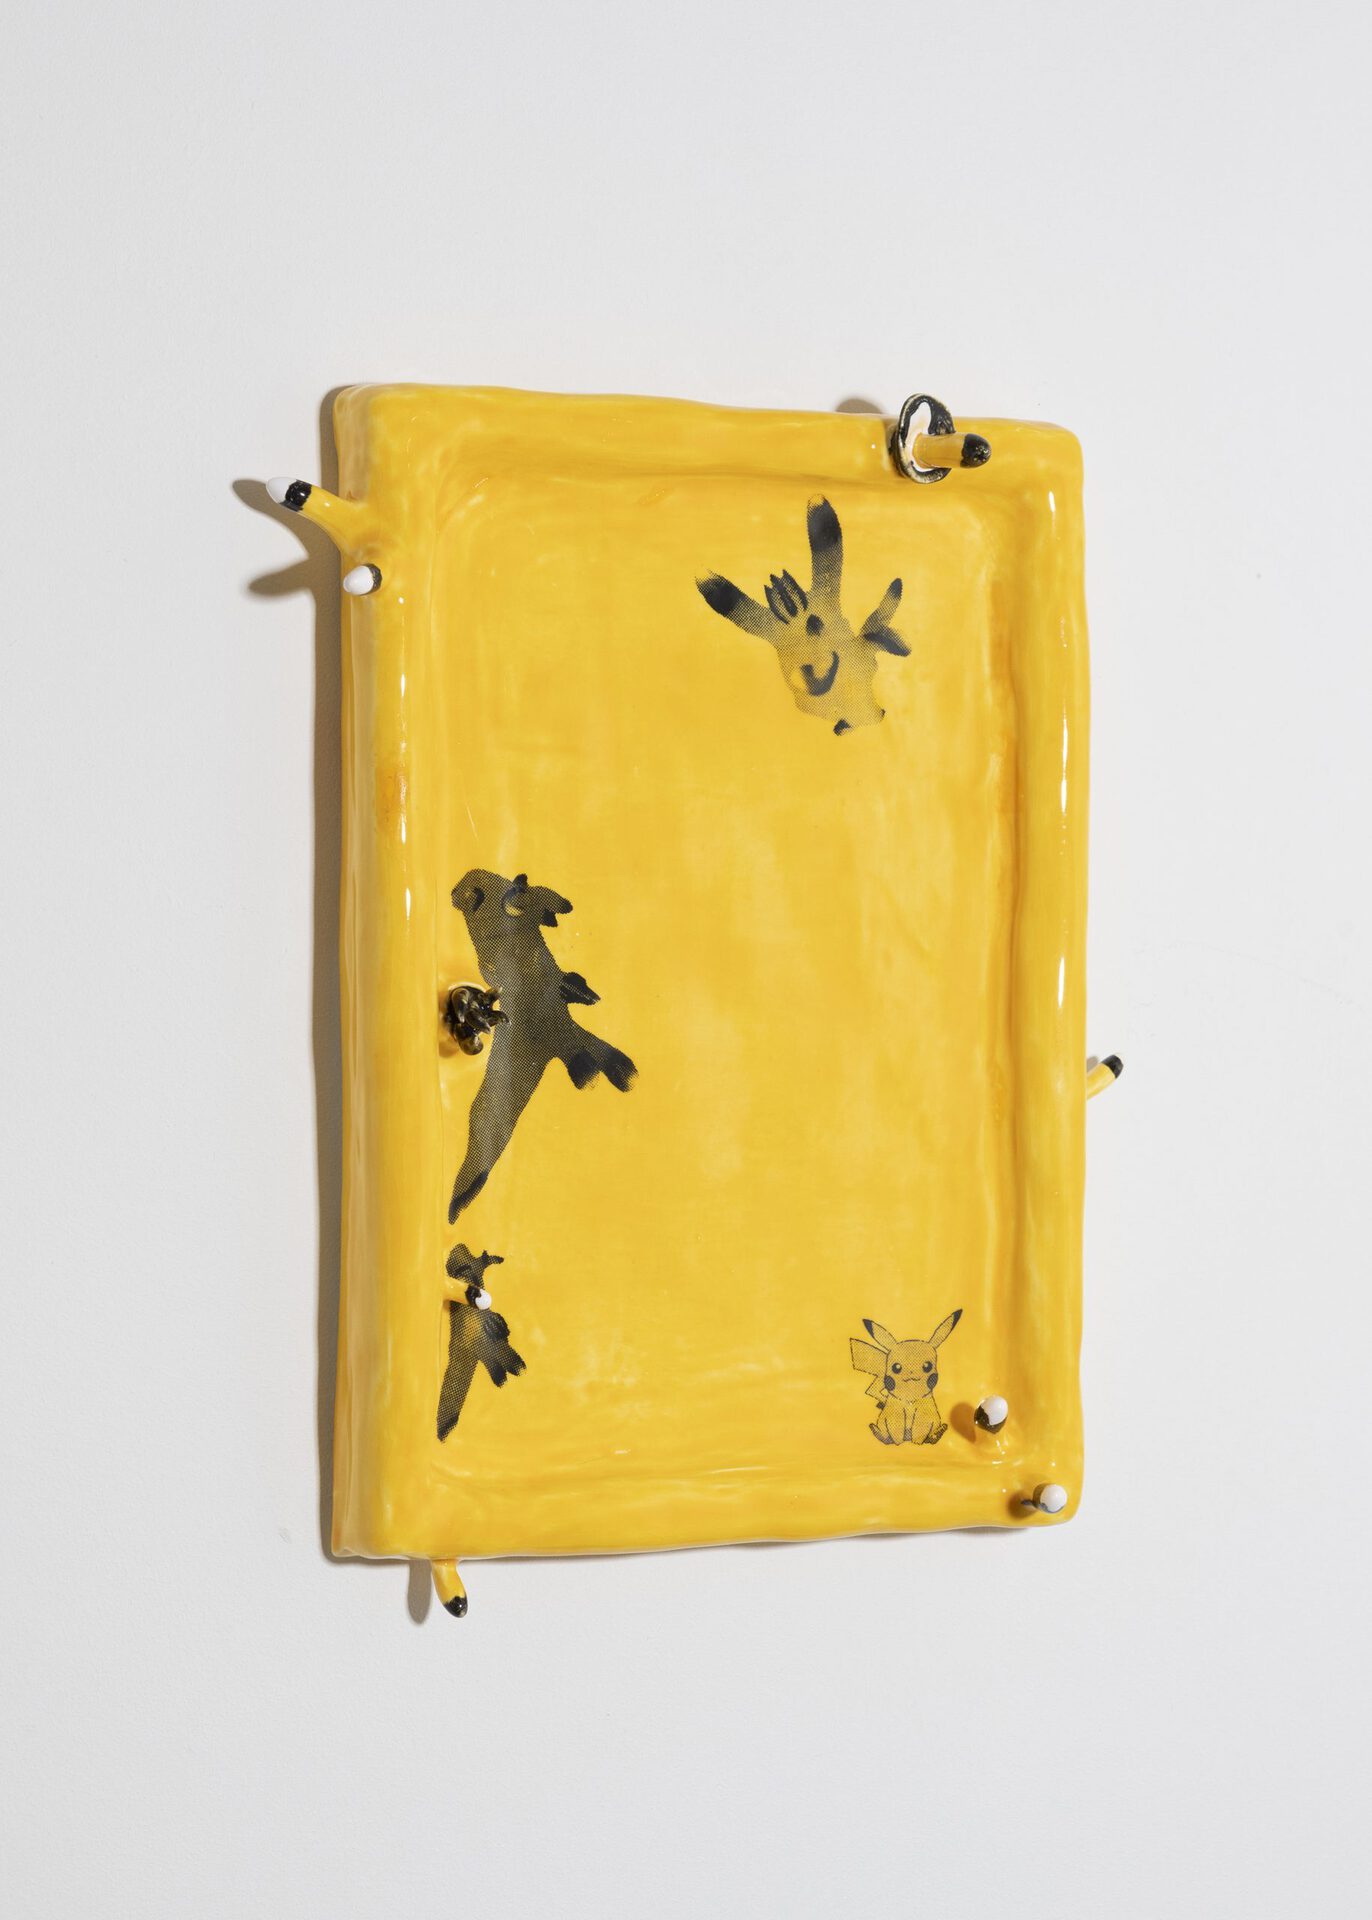 June Fischer, Thecacera Pacifica, 2020, Silkscreen on porcelain, 21 x 29.7 cm